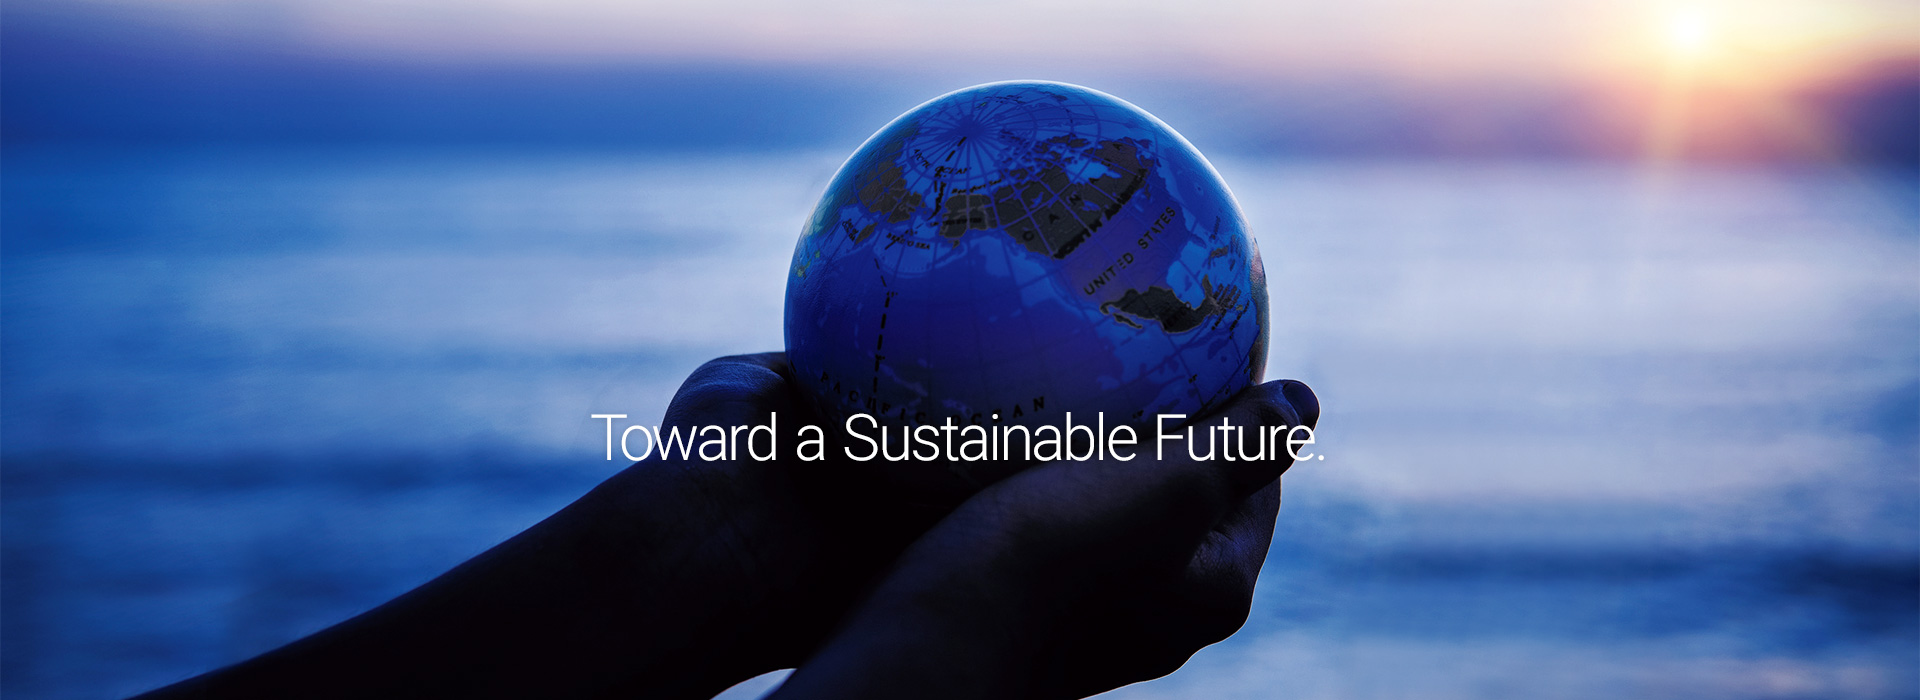 Toward a Sustainable Future.